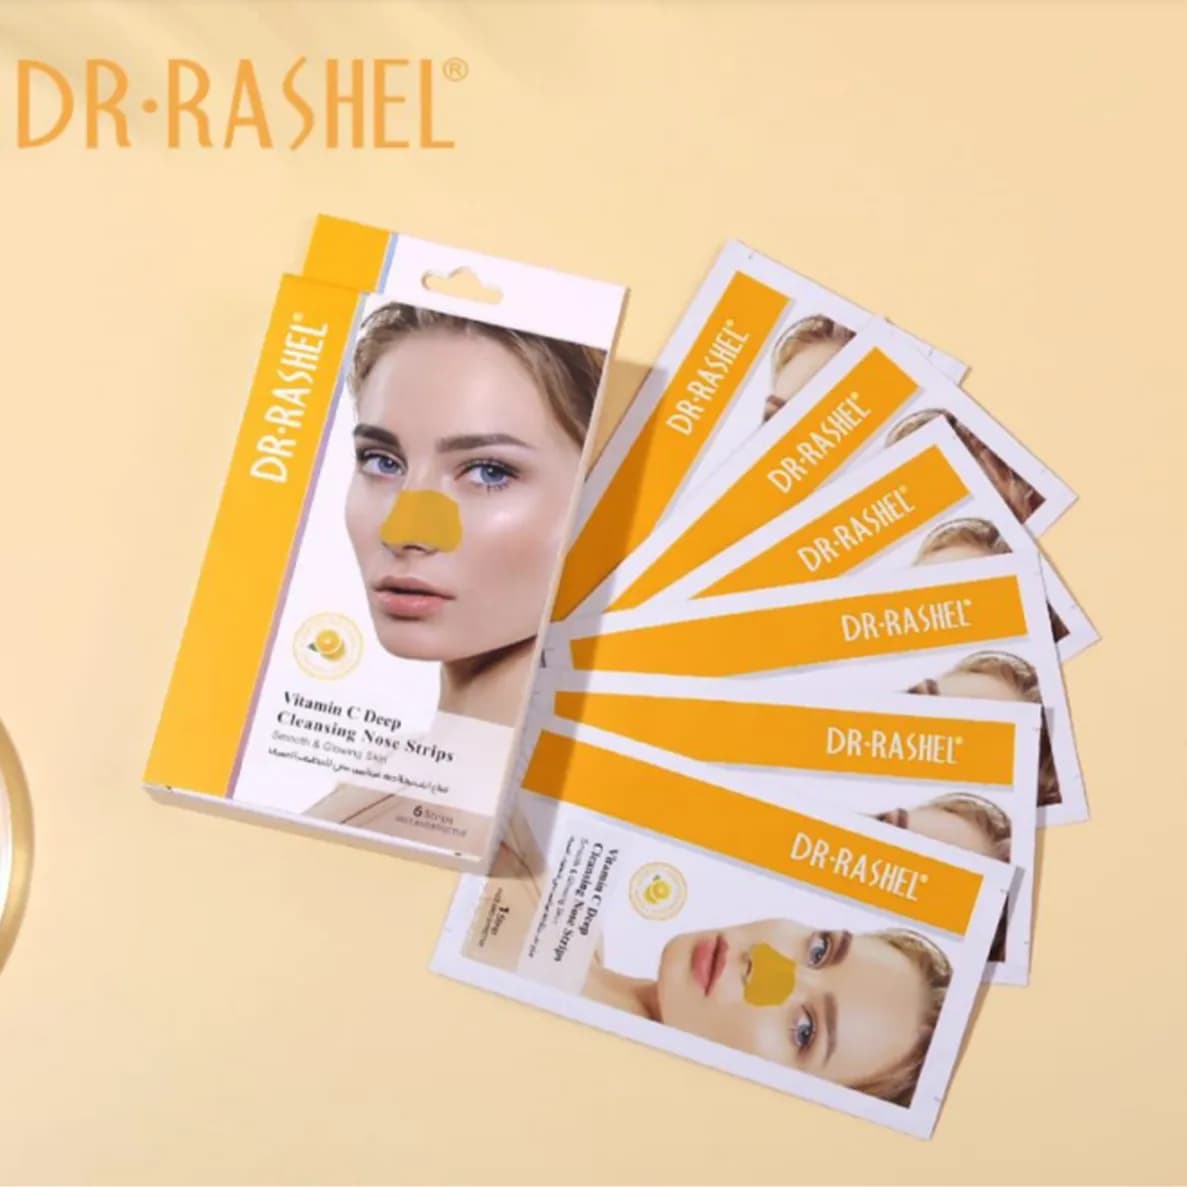 Dr.Rashel Vitamin C Deep Cleansing Nose Strip - 6 Pcs Sachet Box